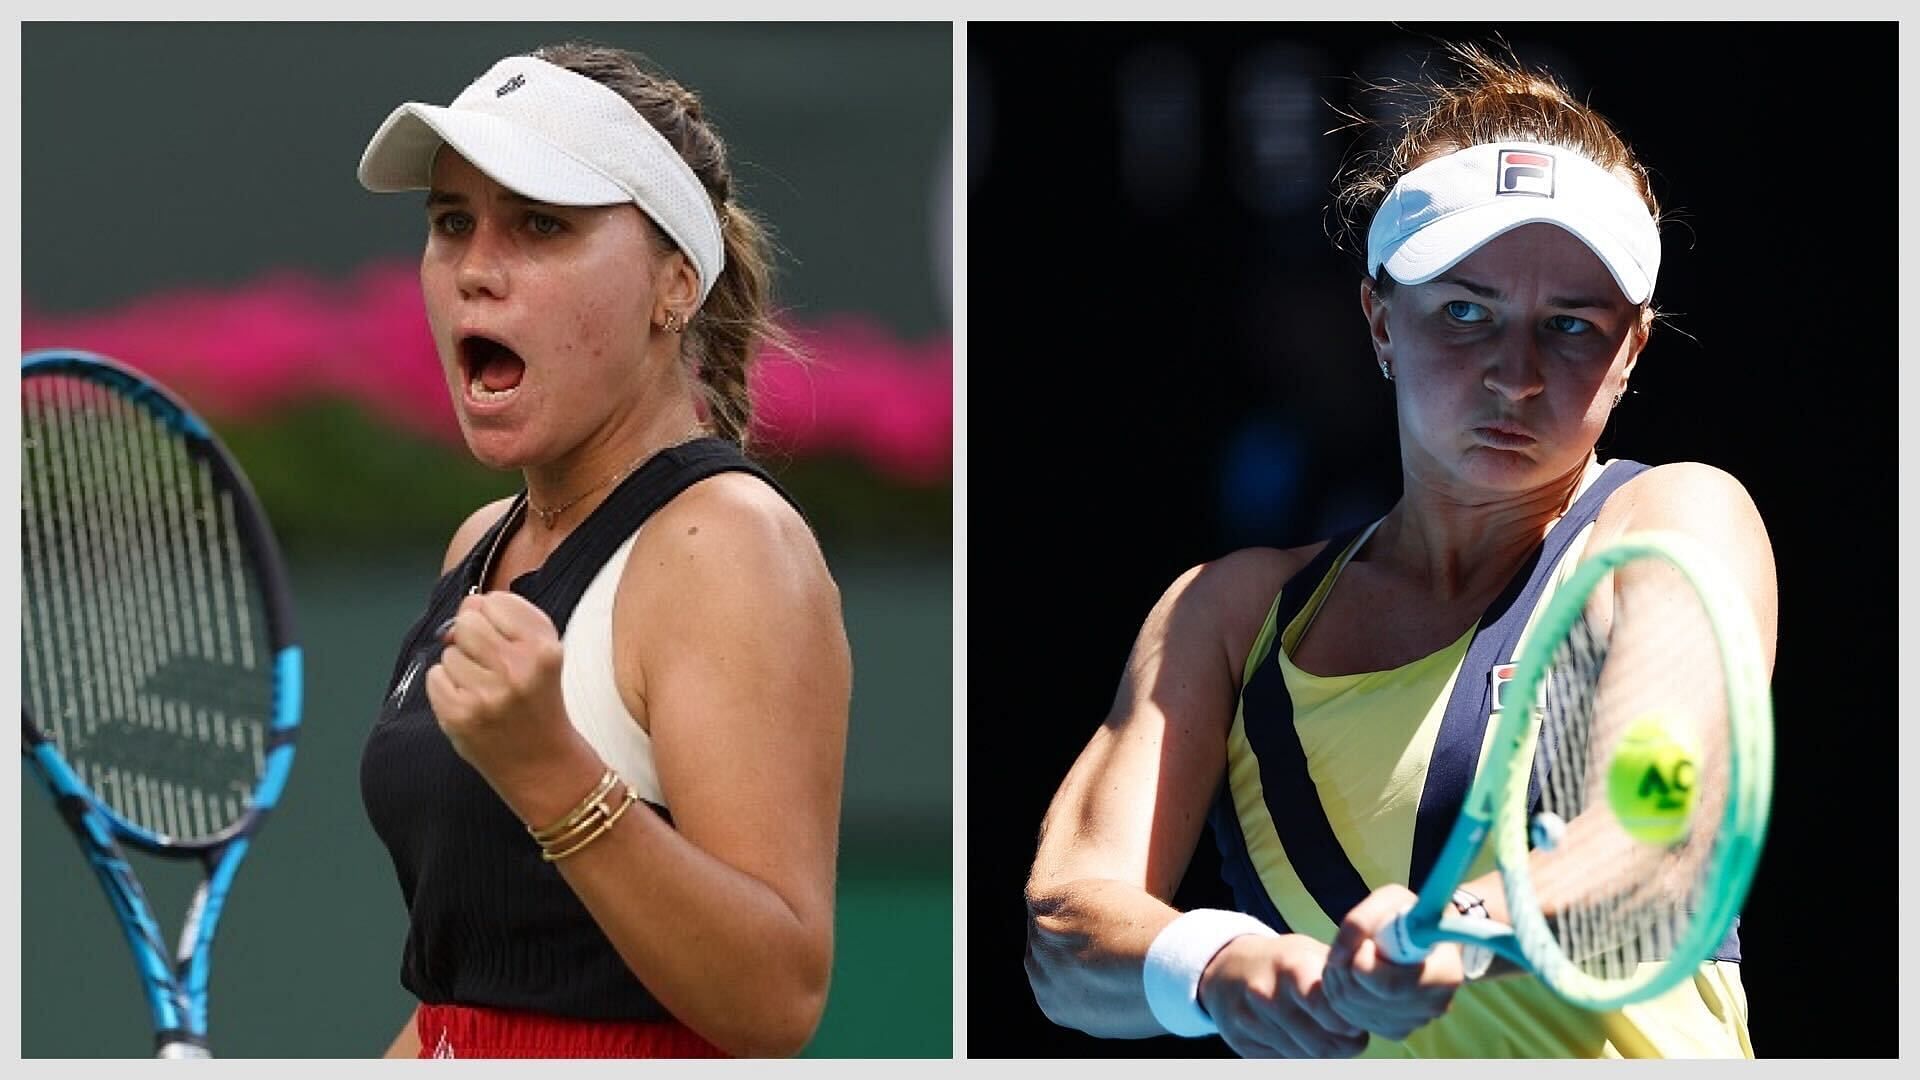 Sofia Kenin vs Barbora Krejcikova will be the San Diego Open final